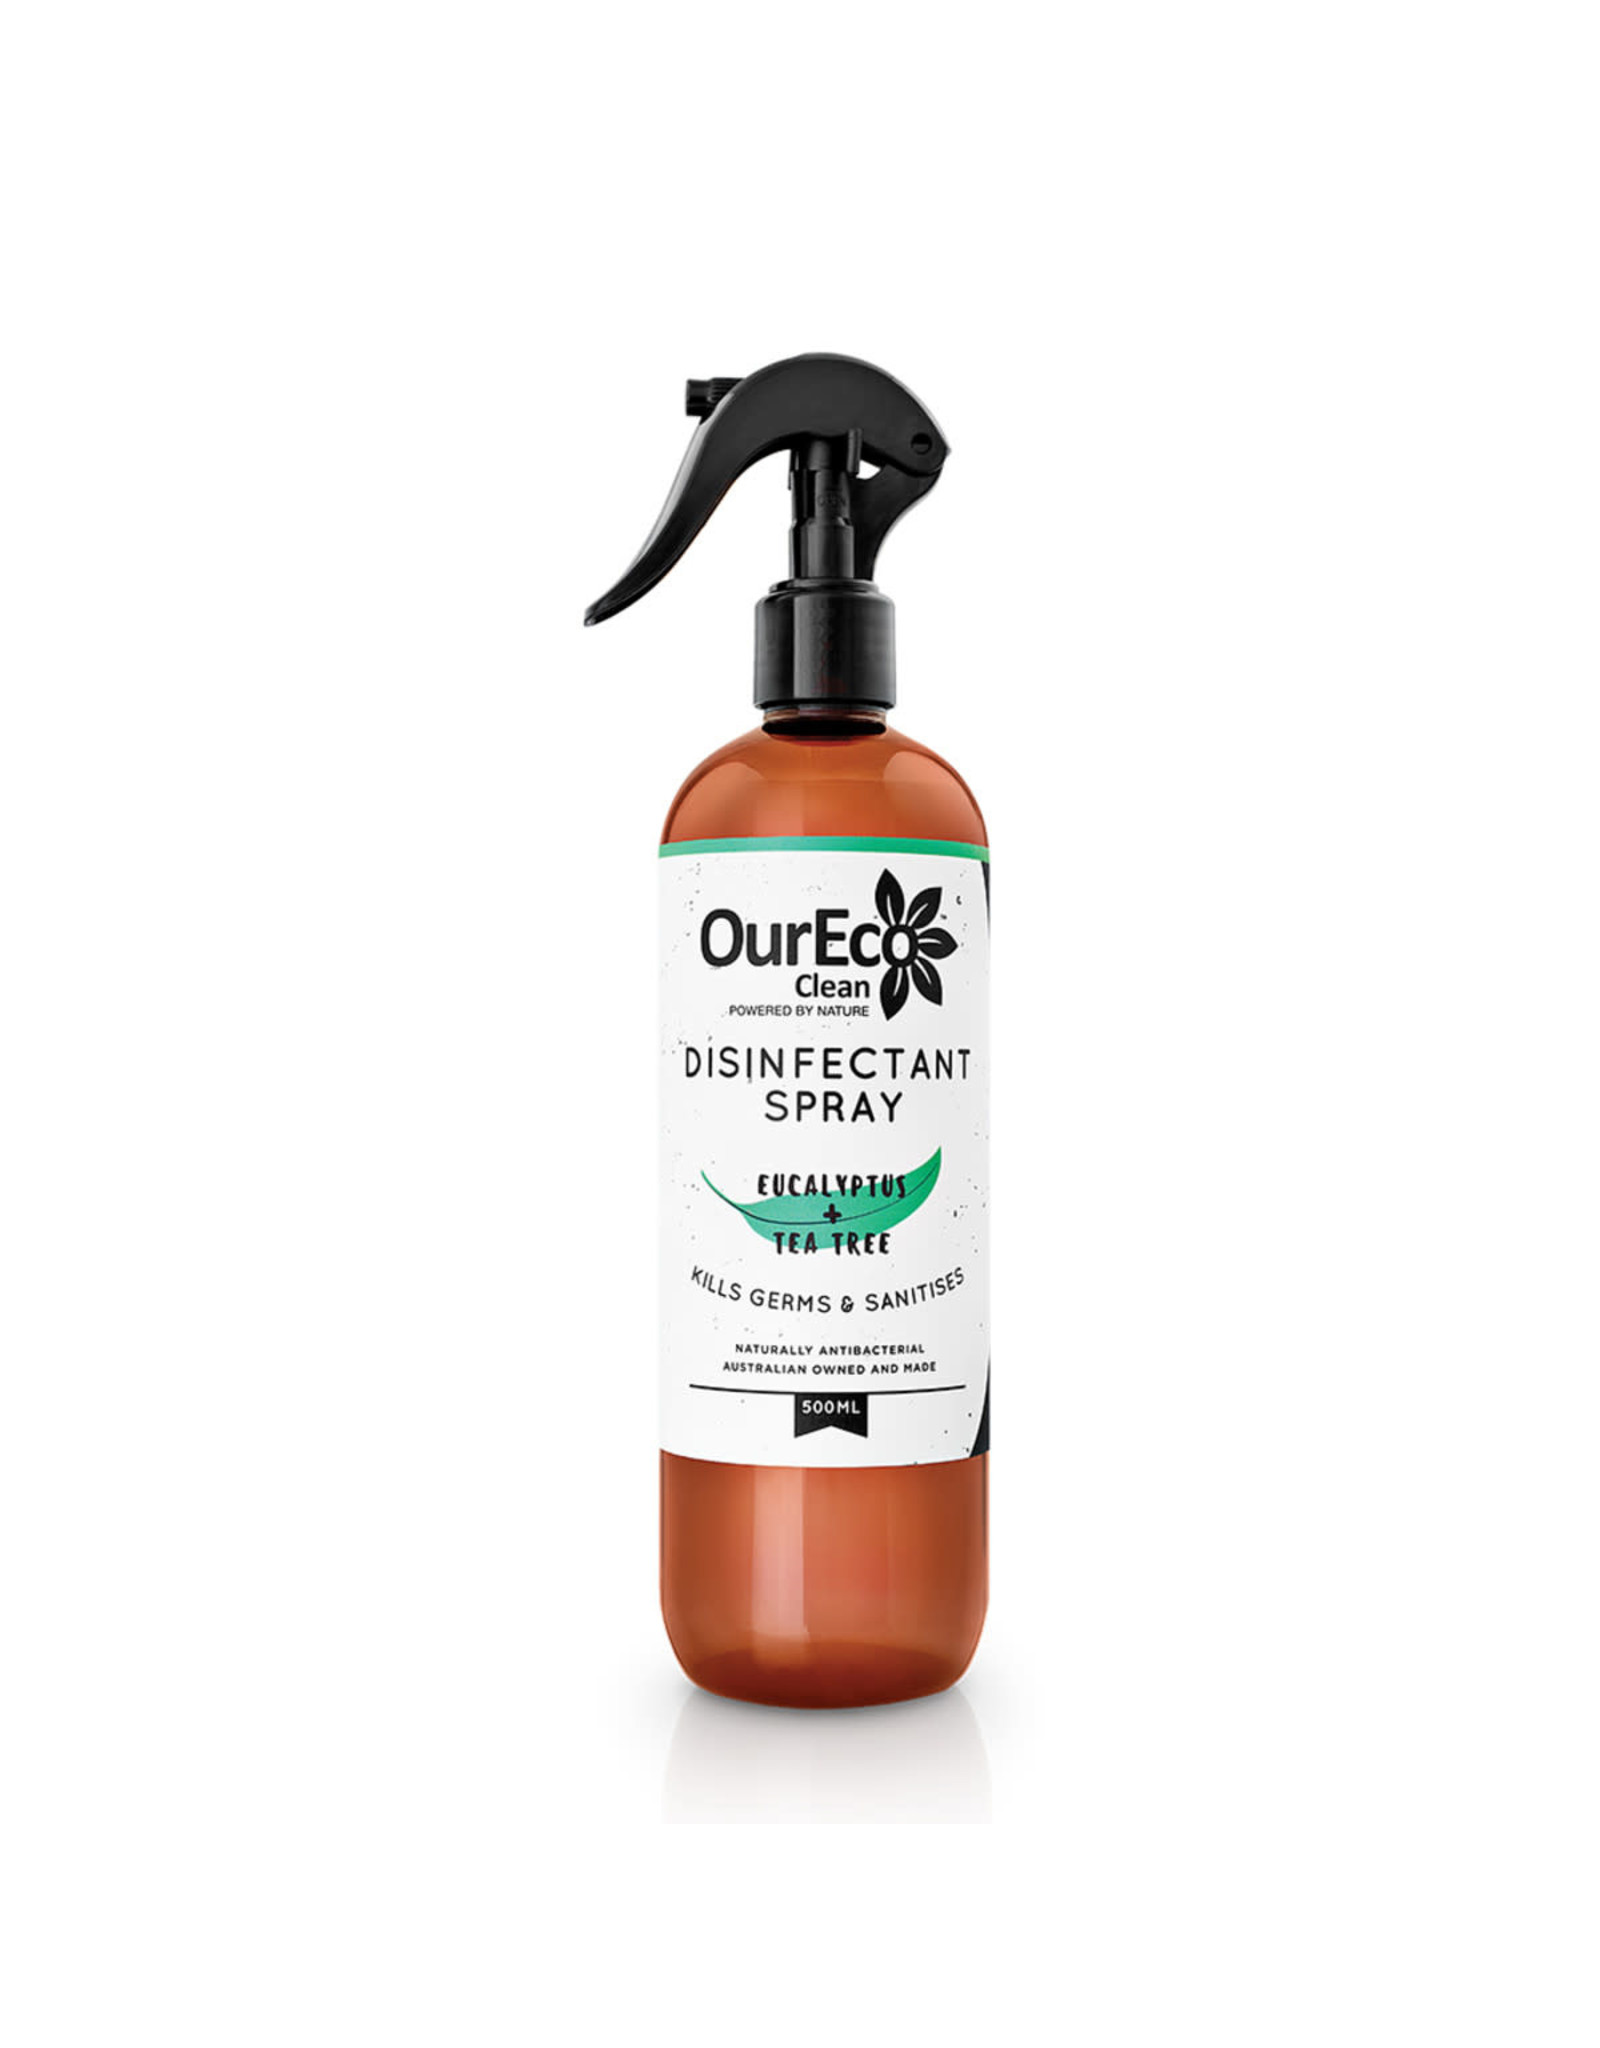 OurEco Disinfectant Surface Spray Hospital Grade Eucalyptus & Tea Tree 500ml